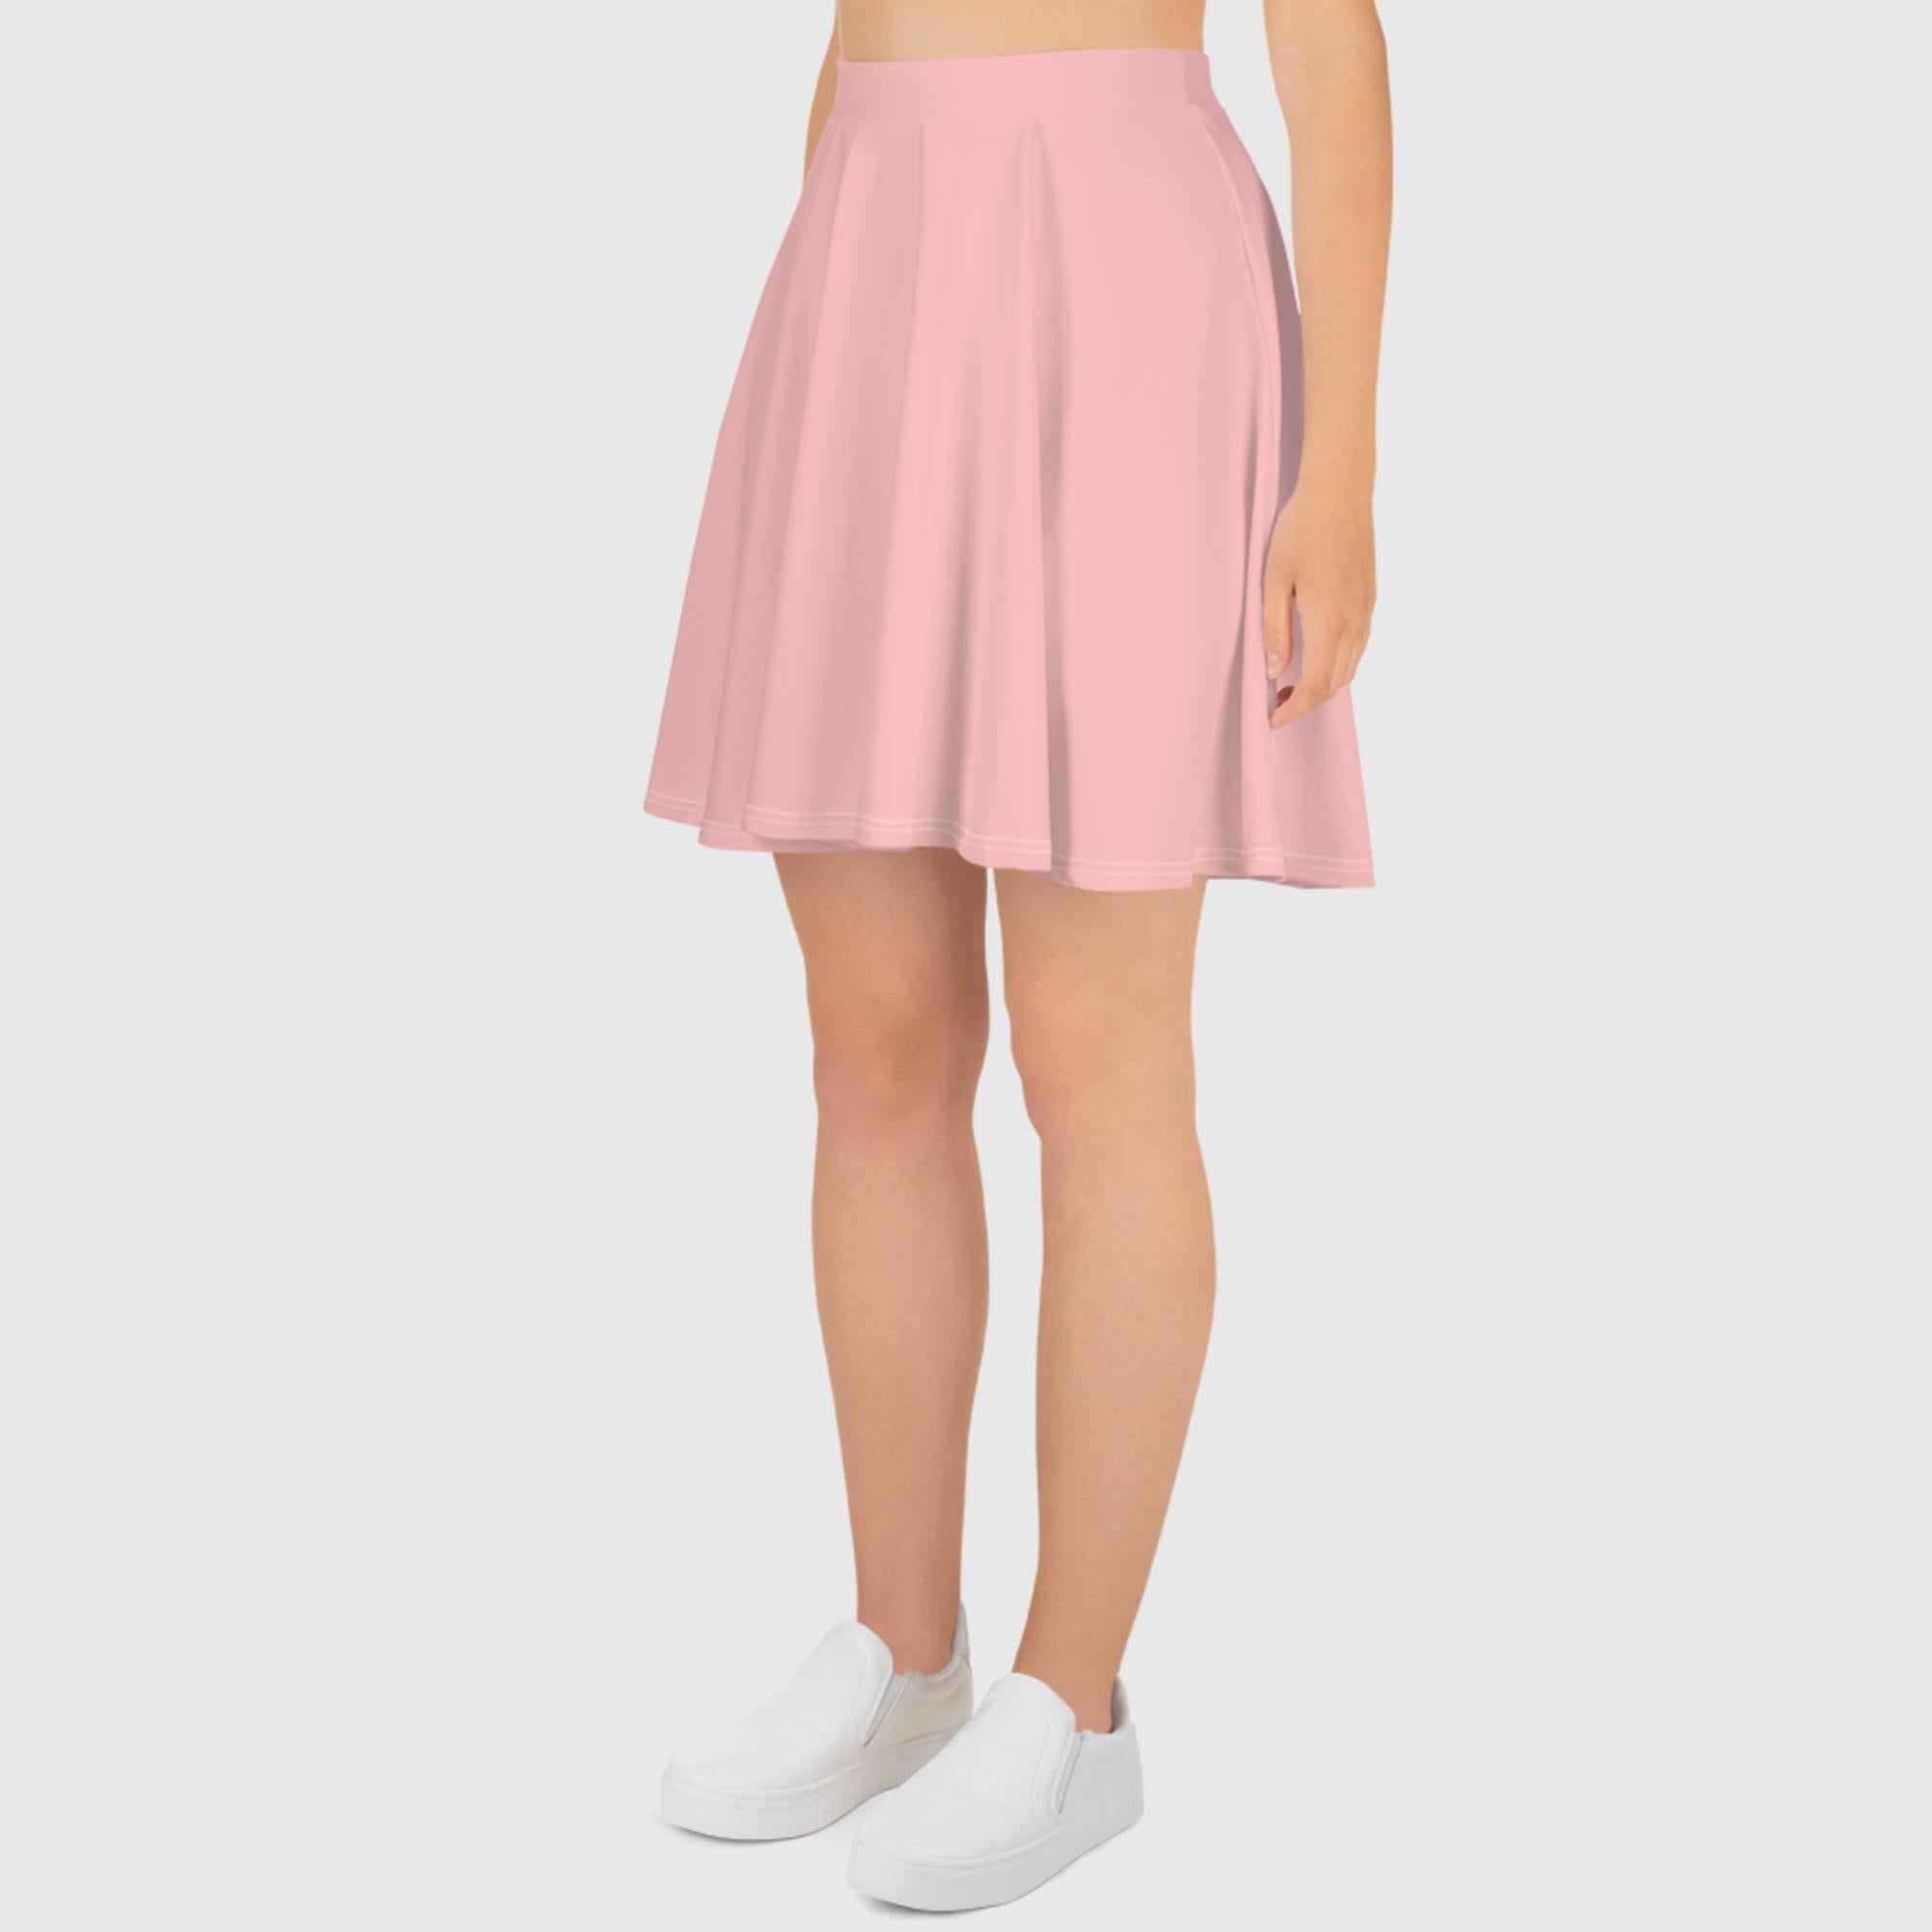 Skater Skirt - Pink - Sunset Harbor Clothing